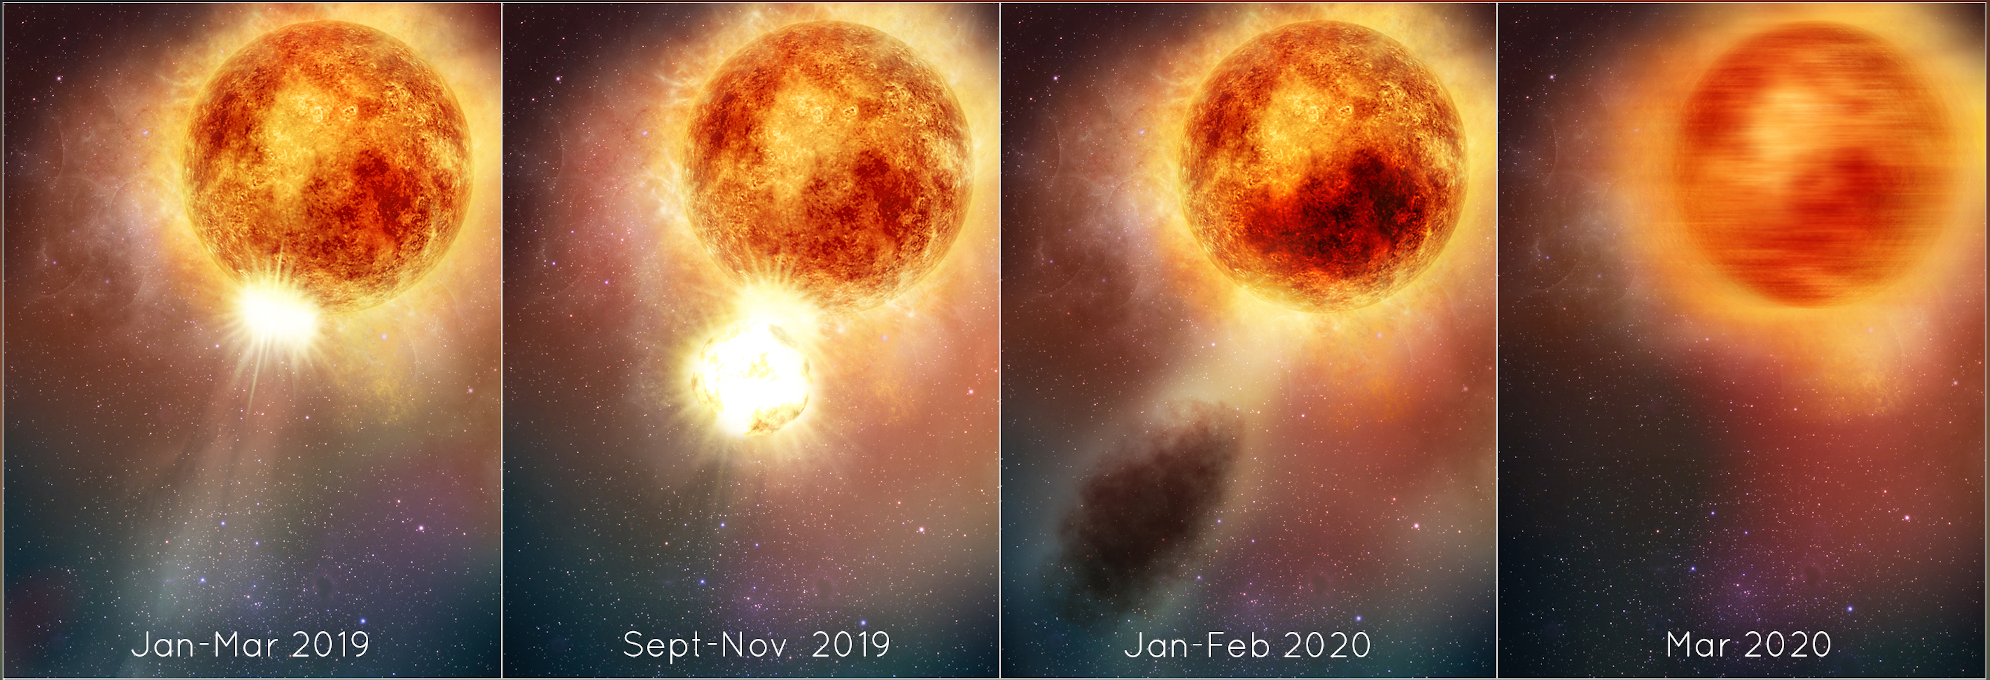 Illustration des changements de luminosité de l'étoile supergéante rouge Bételgeuse, suite à l'éjection d'une partie de sa matière. © NASA, ESA, E. Wheatley (STScI)